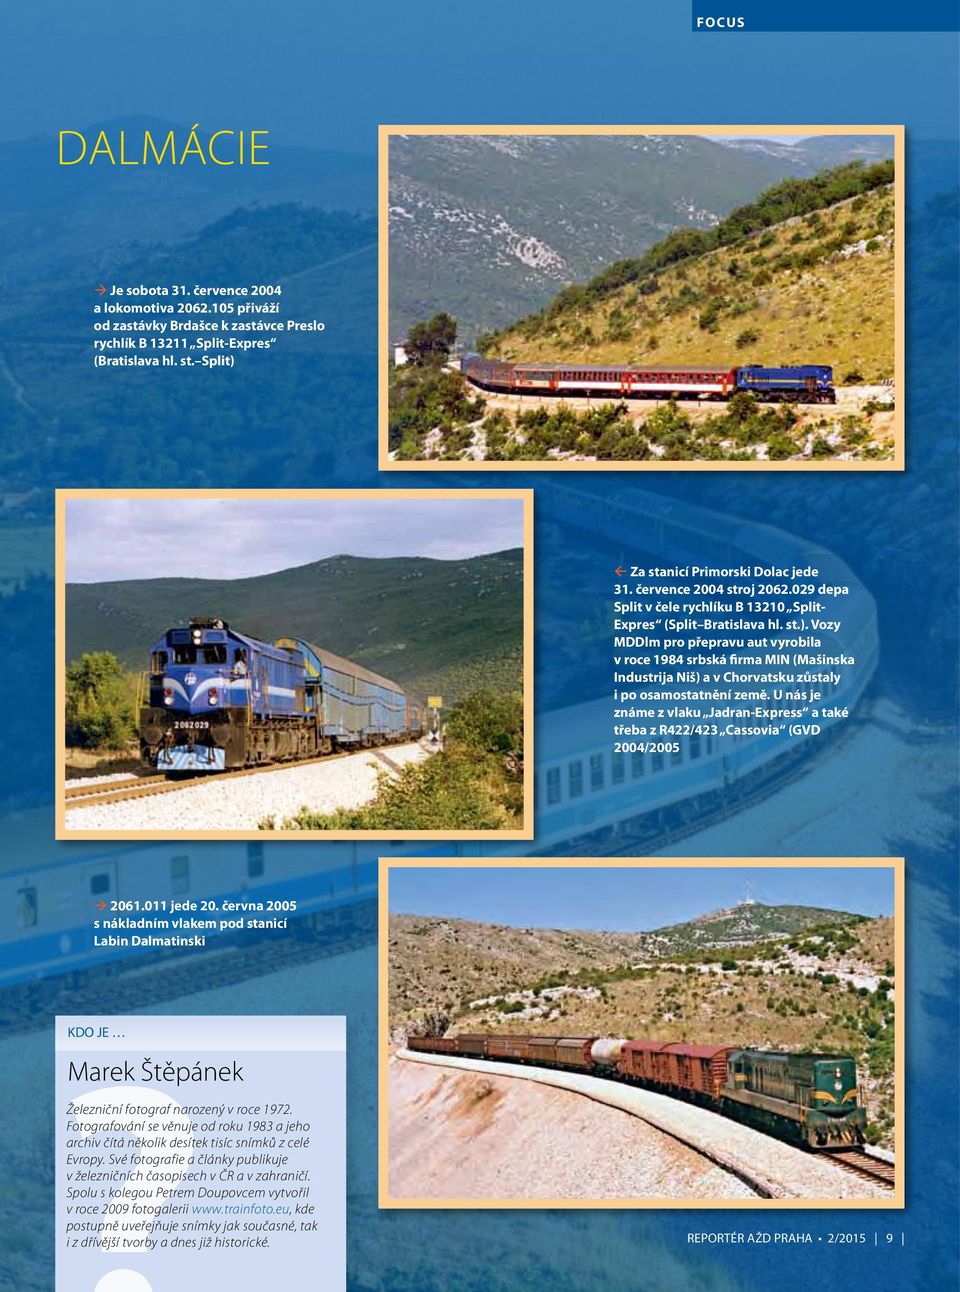 U nás je známe z vlaku Jadran-Express a také třeba z R422/423 Cassovia (GVD 2004/2005 2061.011 jede 20.